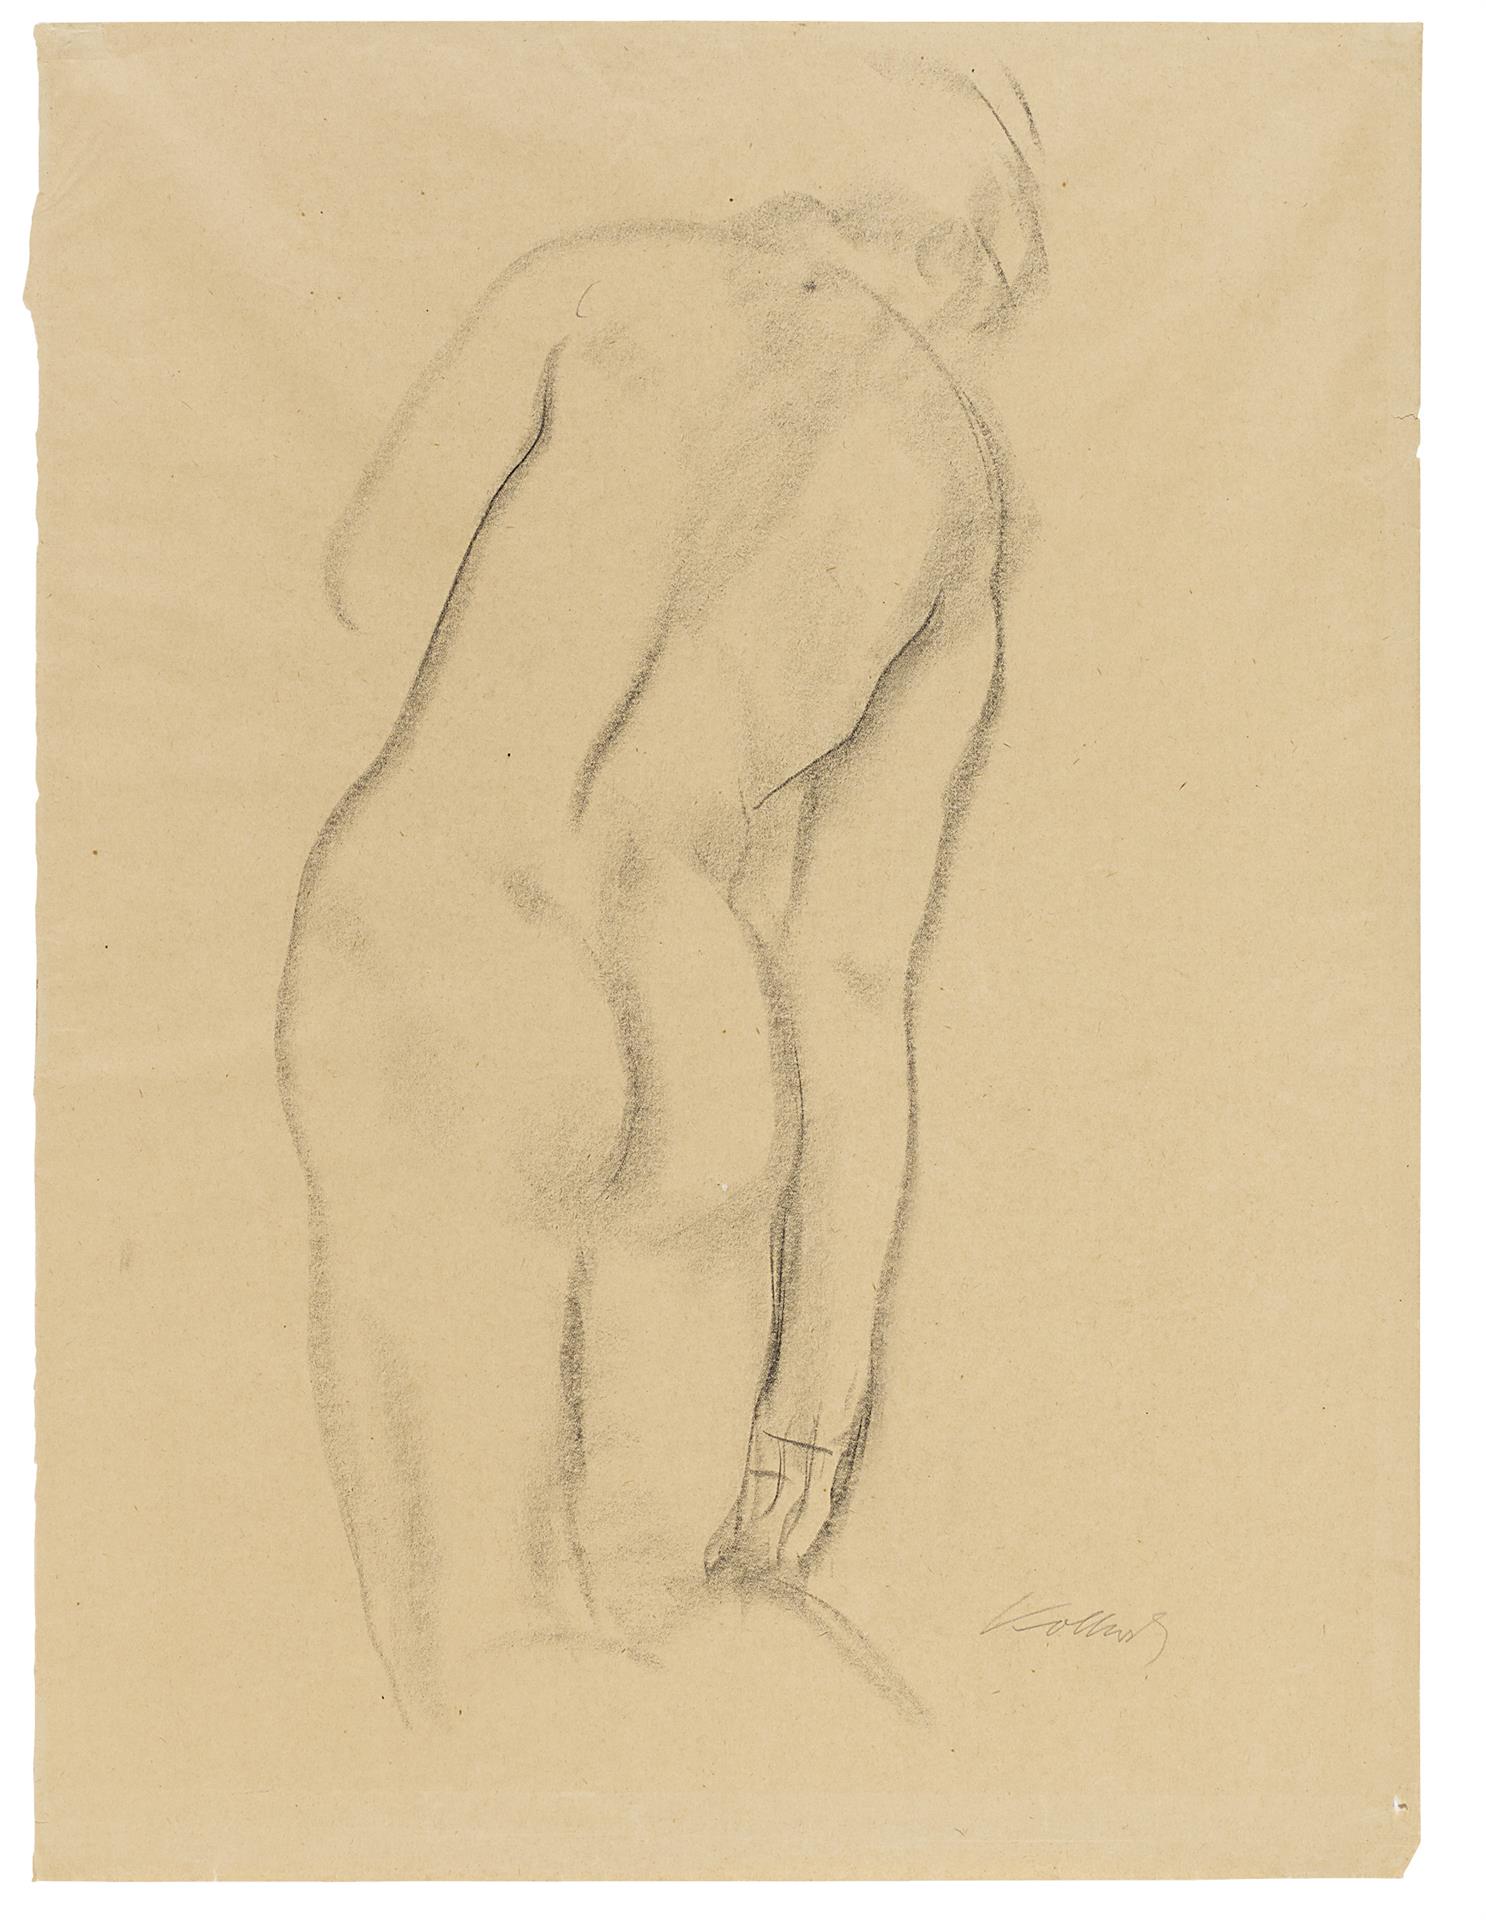 Käthe Kollwitz, Female Nude from behind, kneeling, 1904-06, black chalk, NT 339, Cologne Kollwitz Collection © Käthe Kollwitz Museum Köln